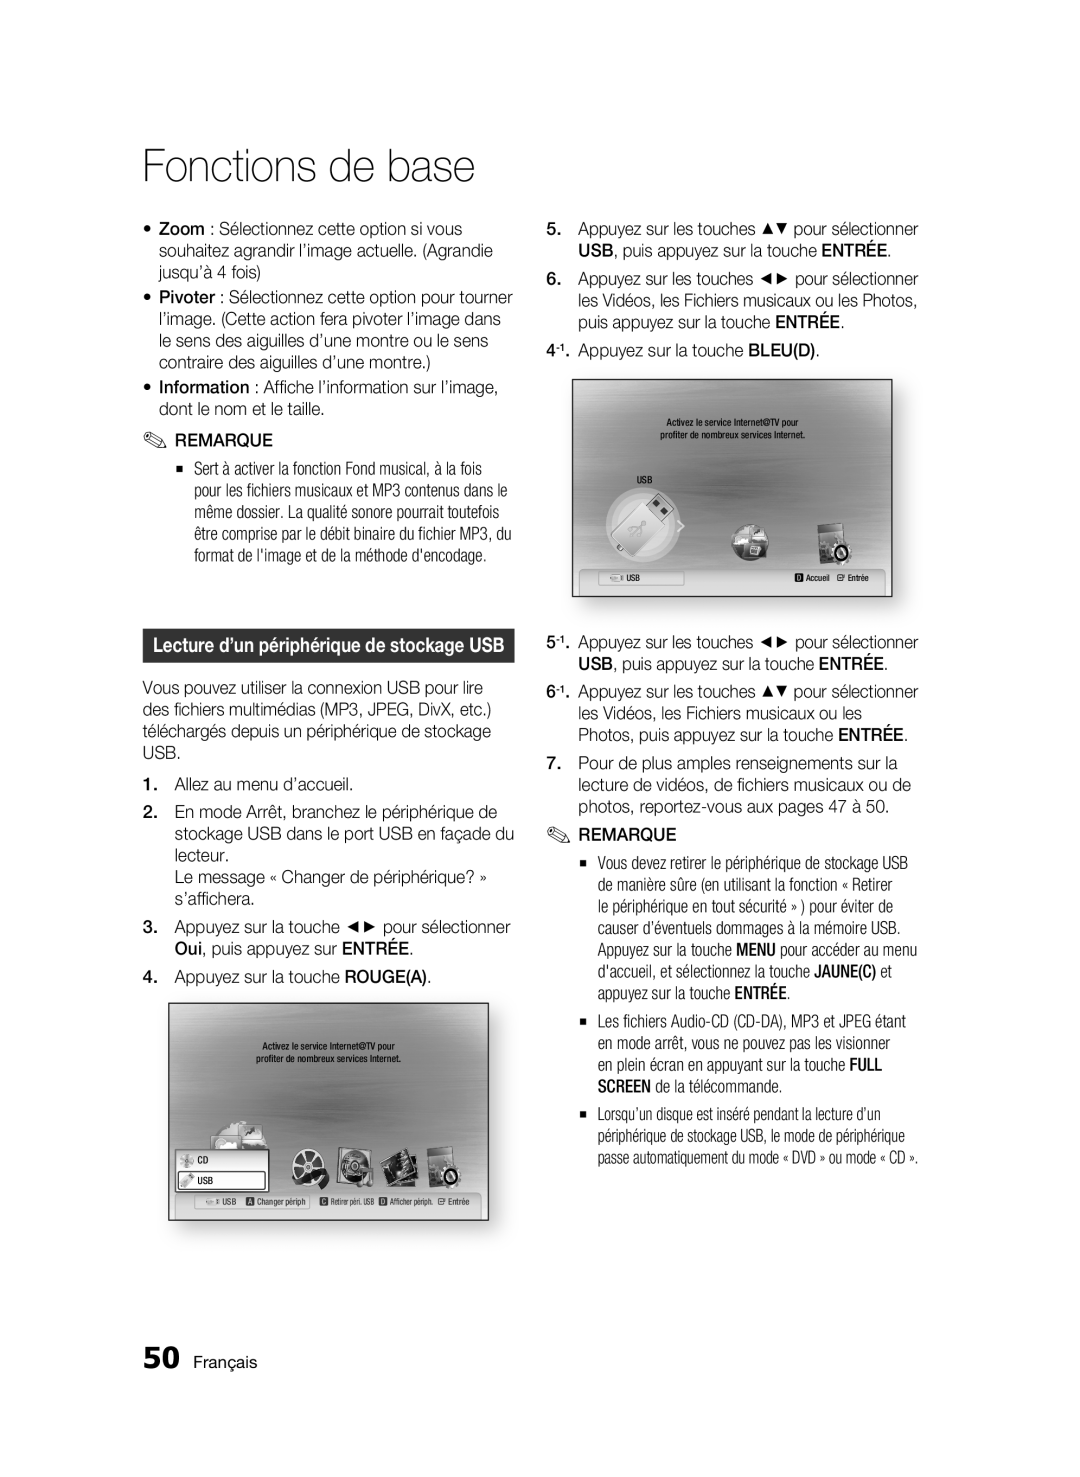 Samsung 01942G-BD-C6300-XAC-0823 user manual Fonctions de base, Lecture d’un périphérique de stockage USB, Français 